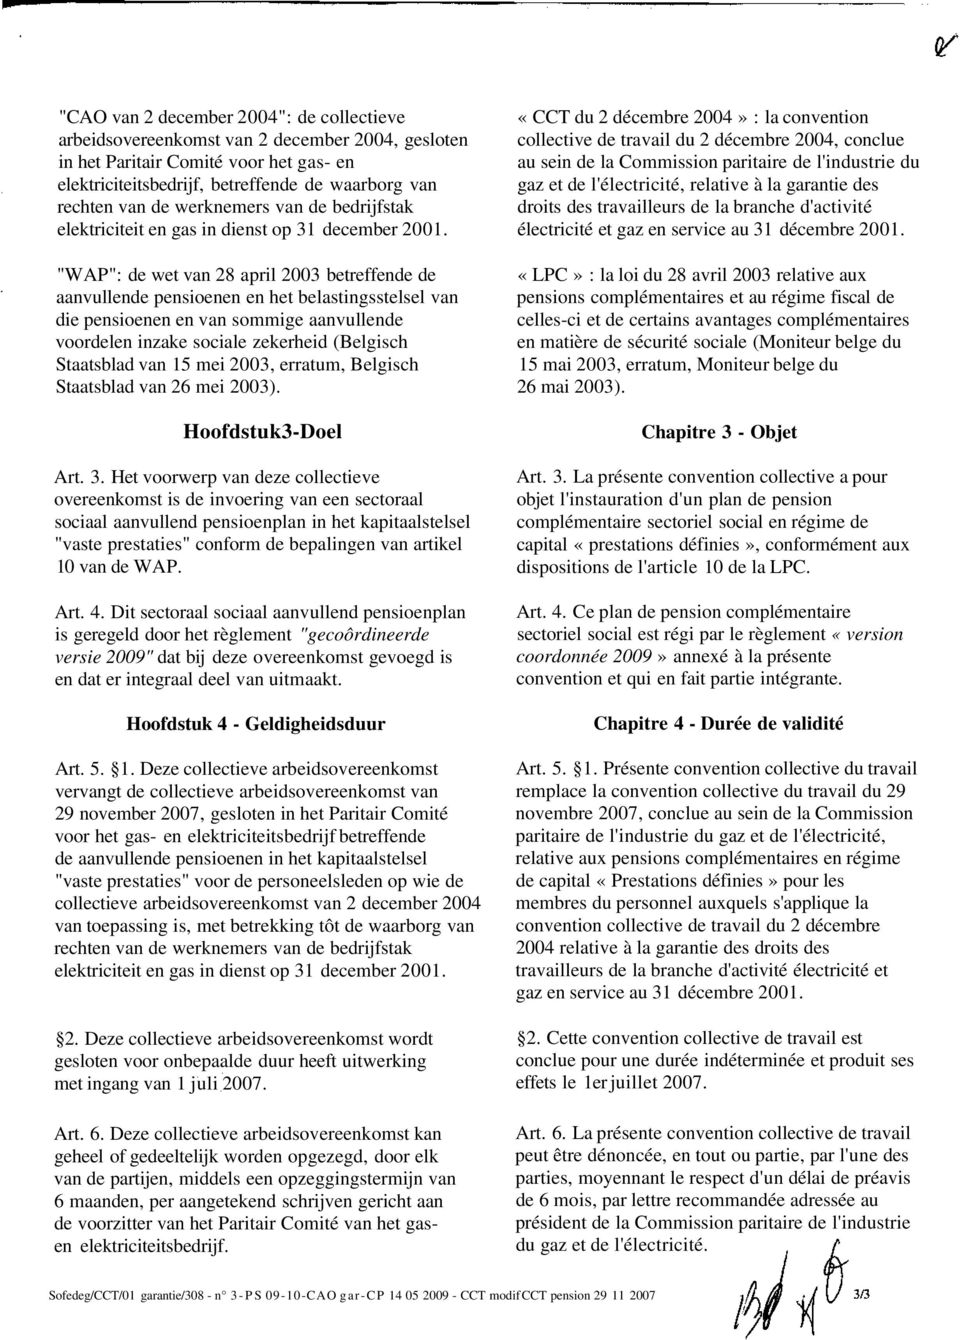 "WAP": de wet van 28 april 2003 betreffende de aanvullende pensioenen en het belastingsstelsel van die pensioenen en van sommige aanvullende voordelen inzake sociale zekerheid (Belgisch Staatsblad